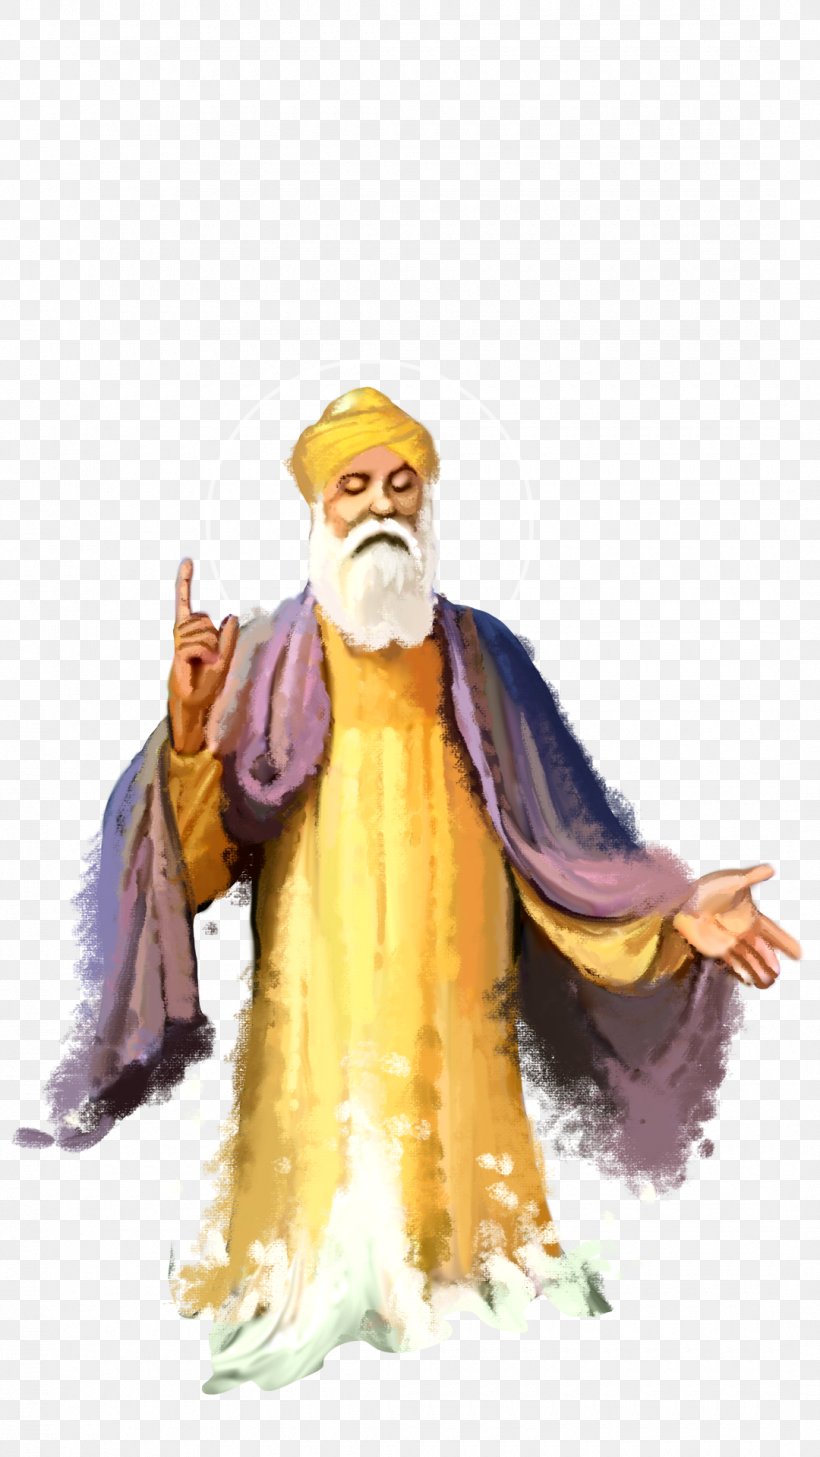 Lakshmi Guru Nanak Gurpurab Sikhism Image, PNG, 1080x1920px, Lakshmi, Costume, Costume Design, Fictional Character, Figurine Download Free